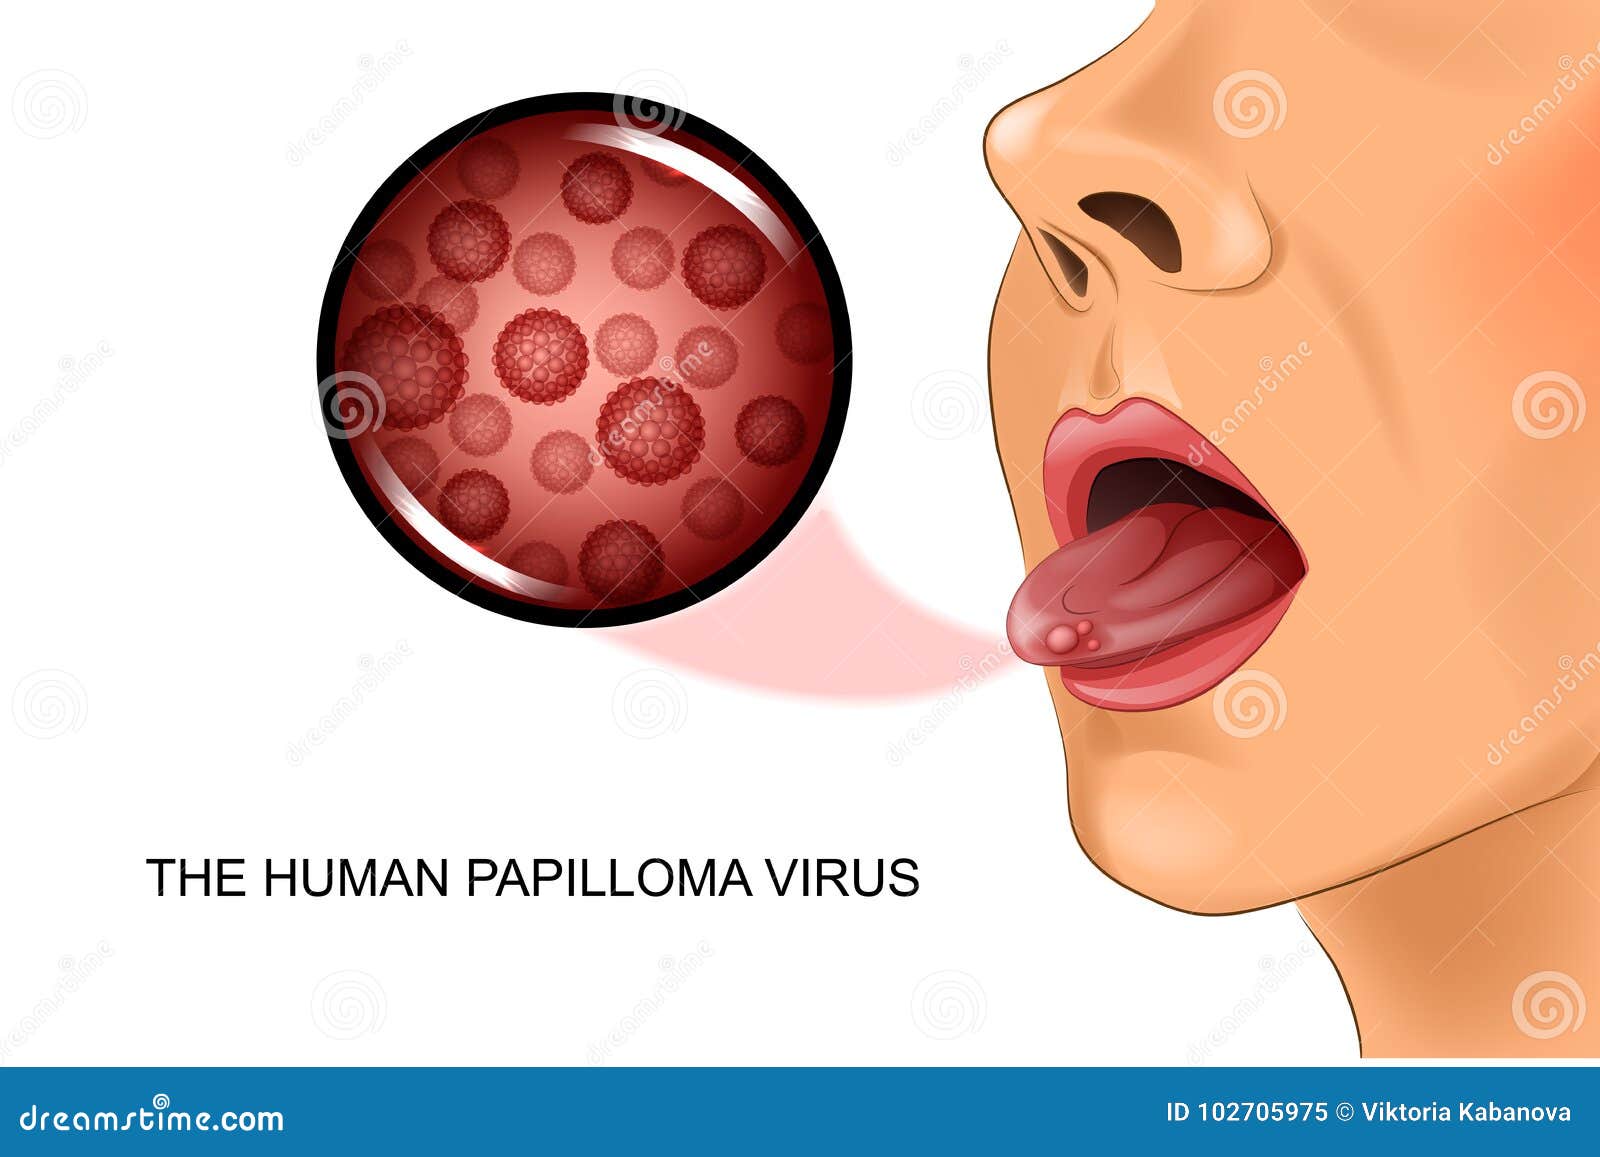 papillomavirus sur la langue)